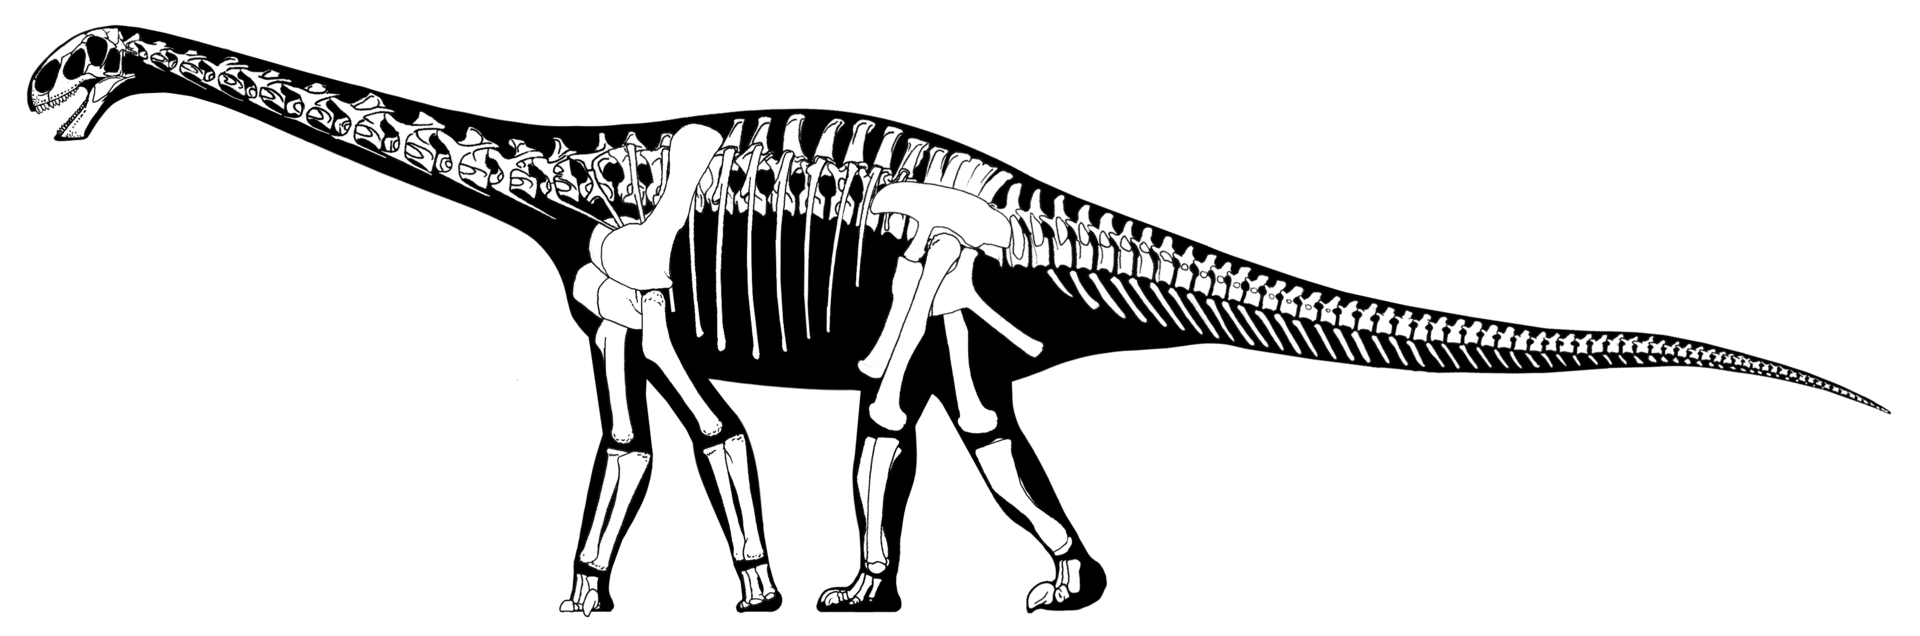 Moderní rekonstrukce kostry a siluety těla středně velkého sauropodního dinosaura druhu Cetiosaurus oxoniensis. Byl formálně popsán roku 1841 a stal se tak jedním z prvních historicky známých sauropodních dinosaurů. Richard Owen, který jej pojmenoval